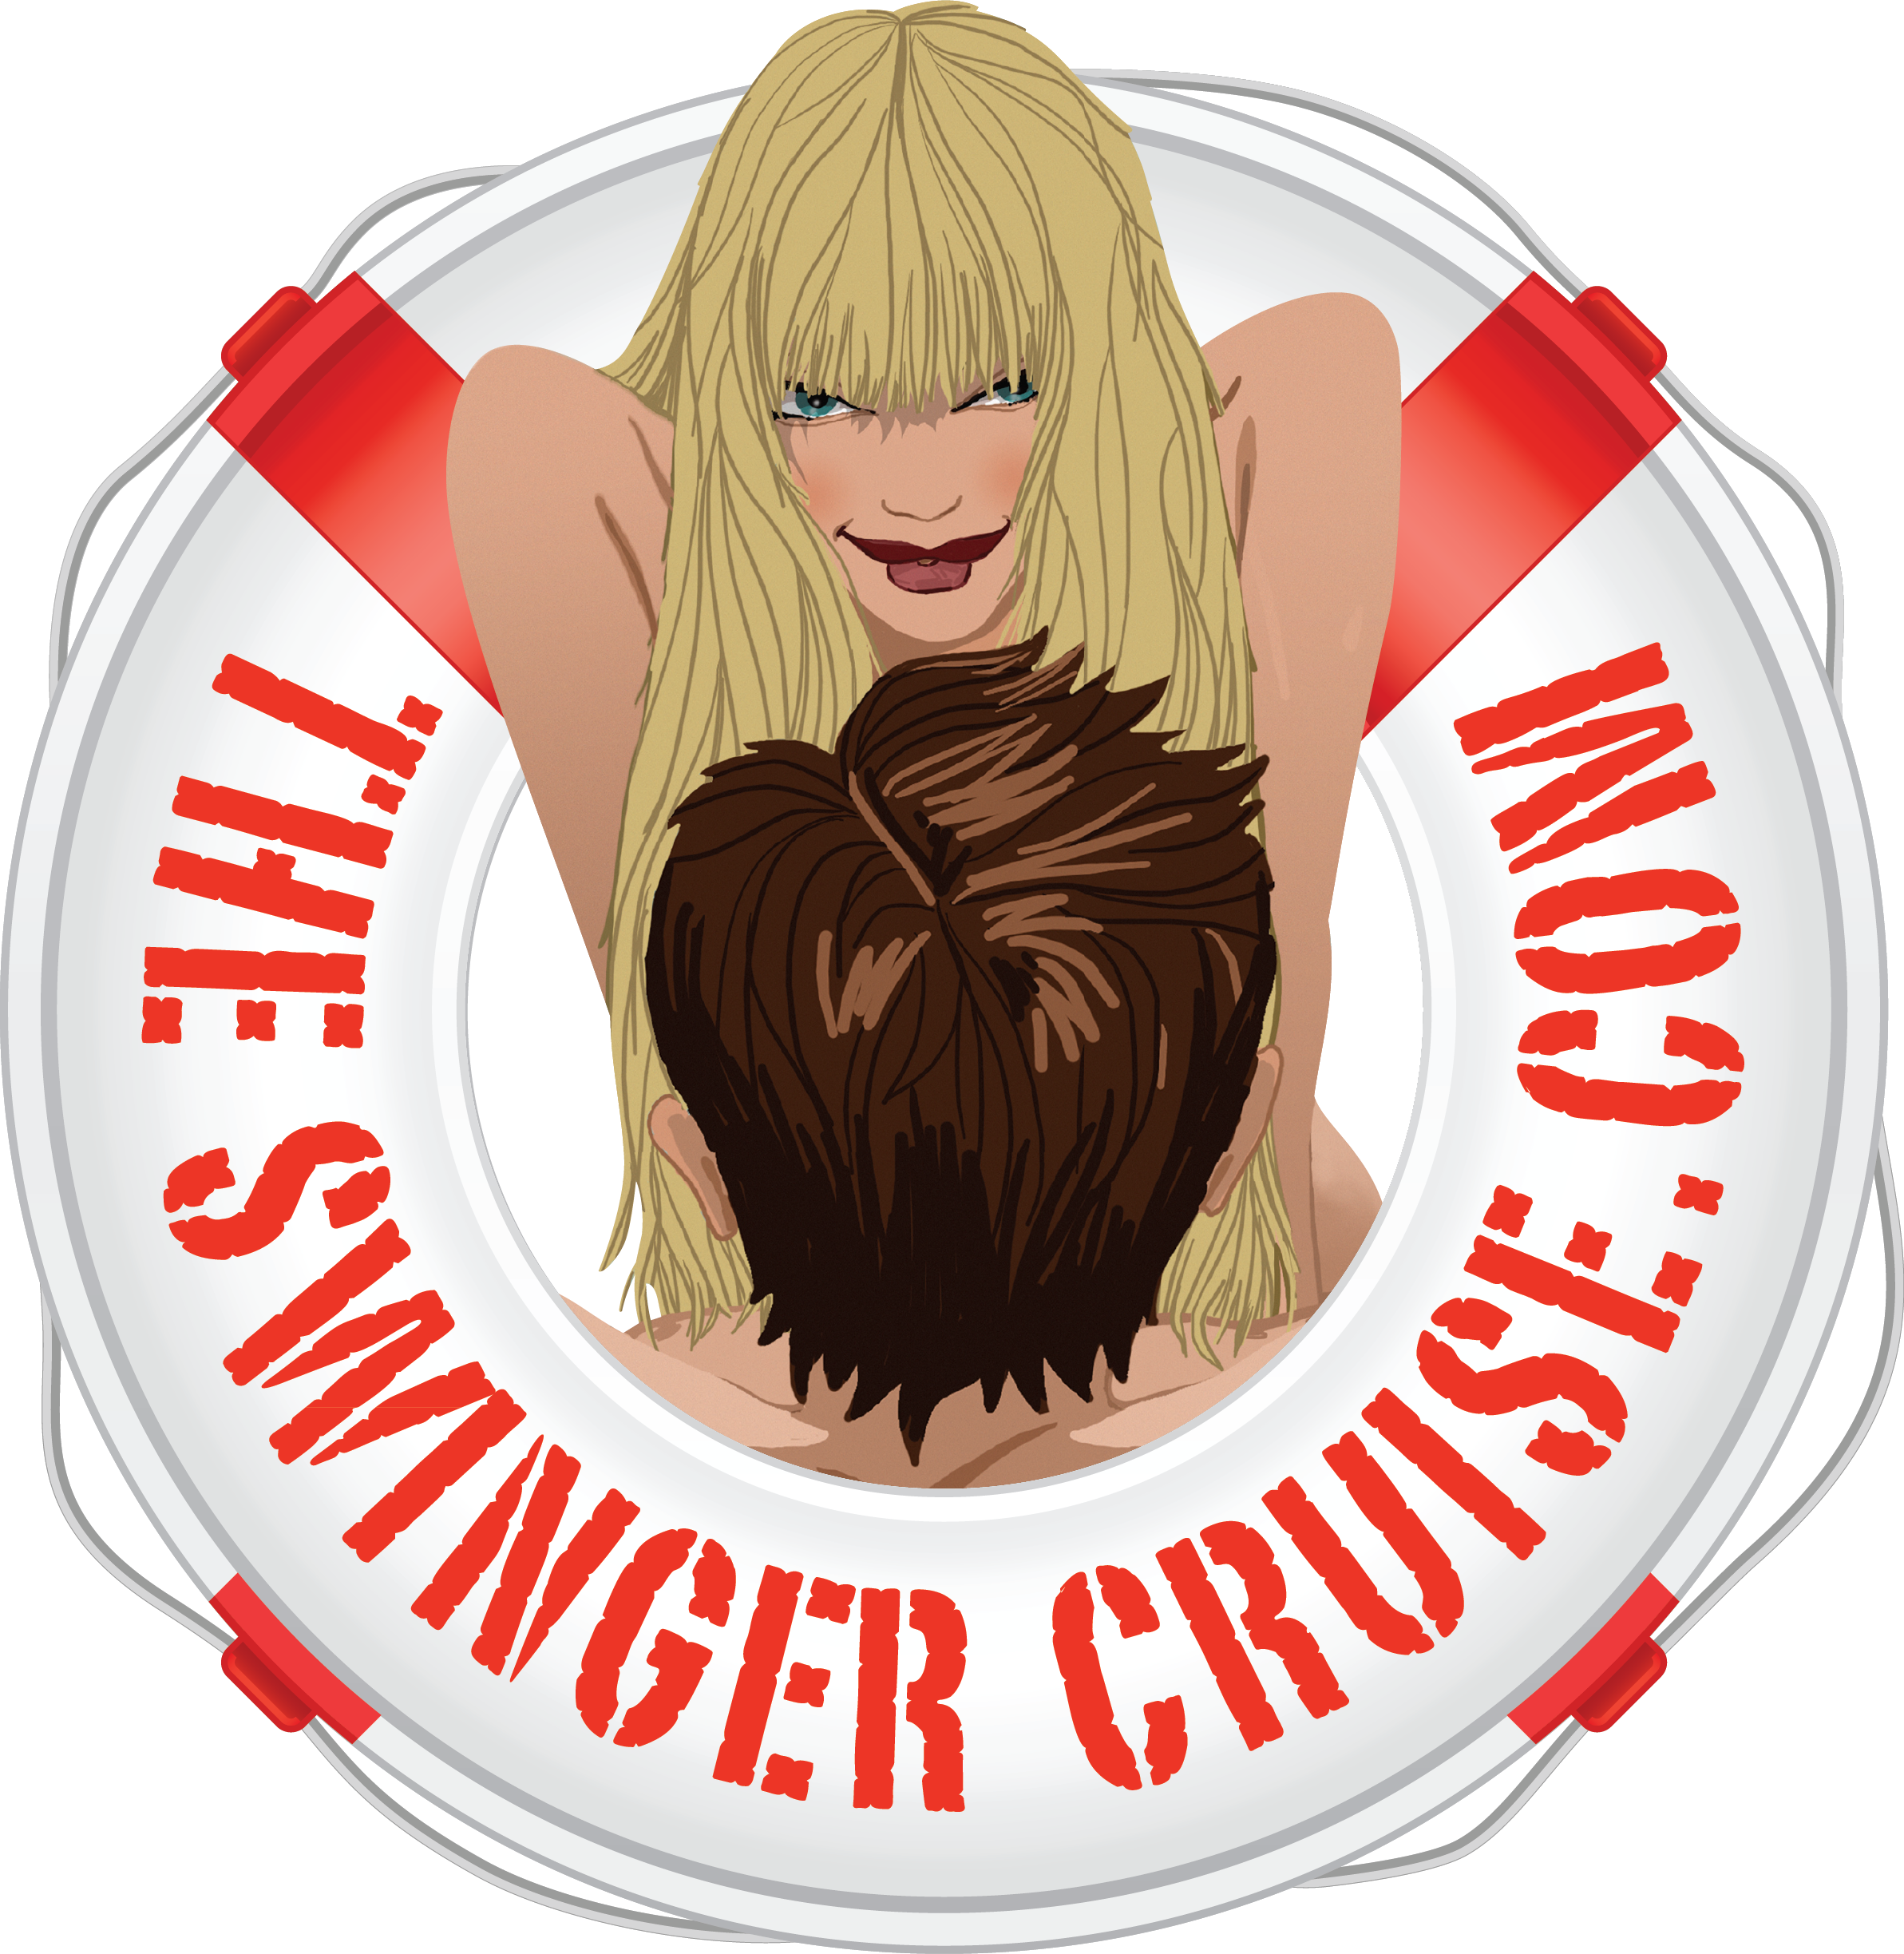 Lifestyle Swinger Cruises Overview » TSC-Cruises The Swinger Cruise image